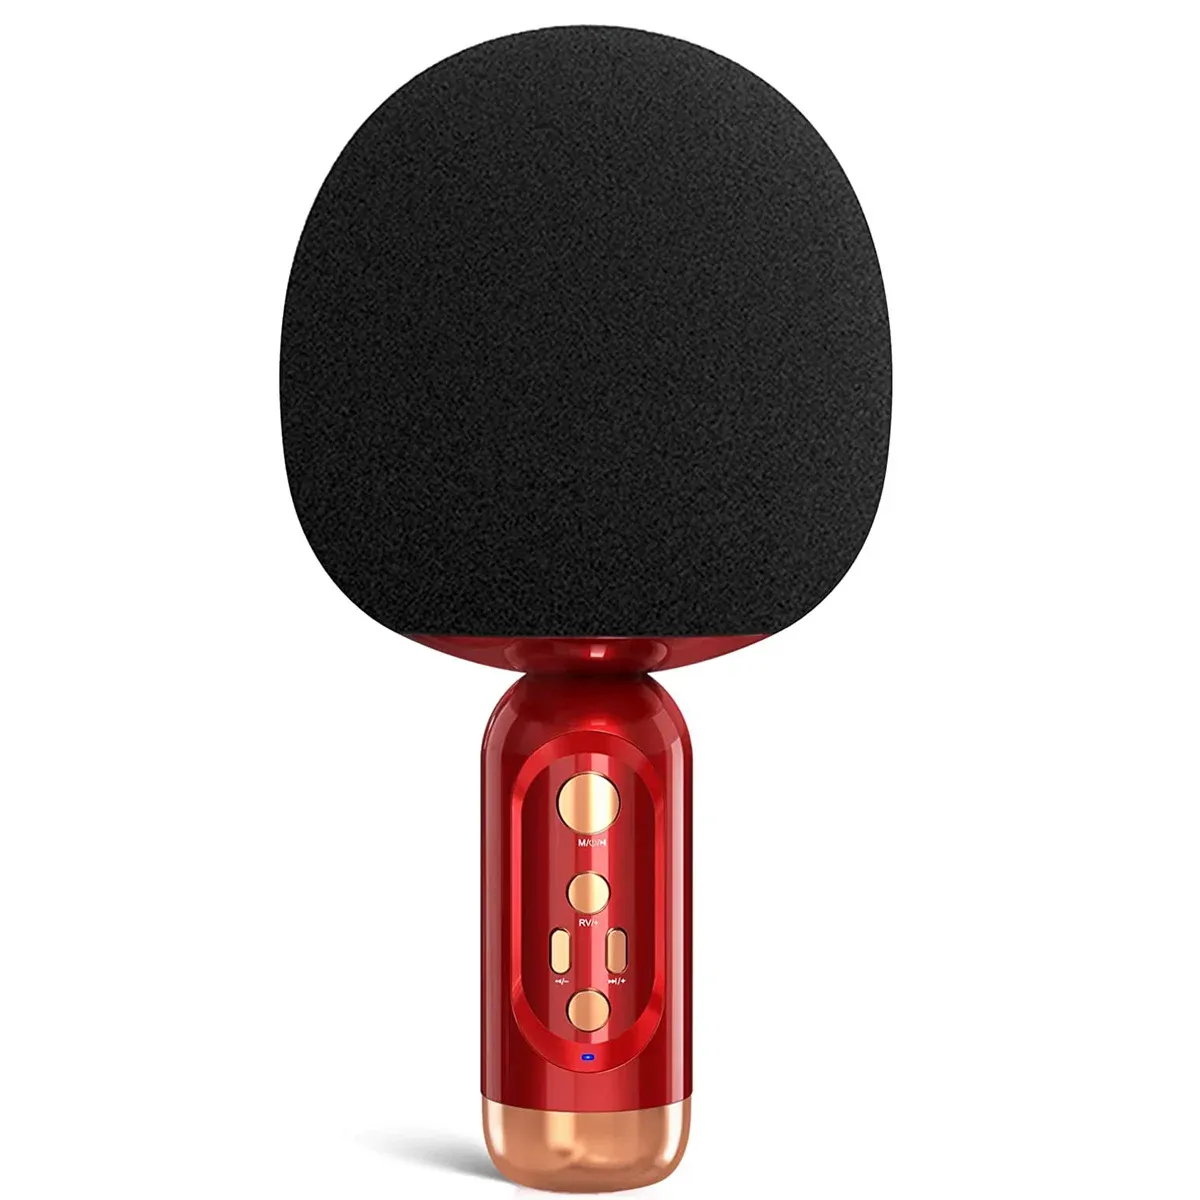 Altoparlanti Karaoke Microfono Senza fili Bluetooth Portatile Mini Adulti Bambini Giocattoli Microfono portatile Altoparlante Canto Casa KTV Festa Al Coperto